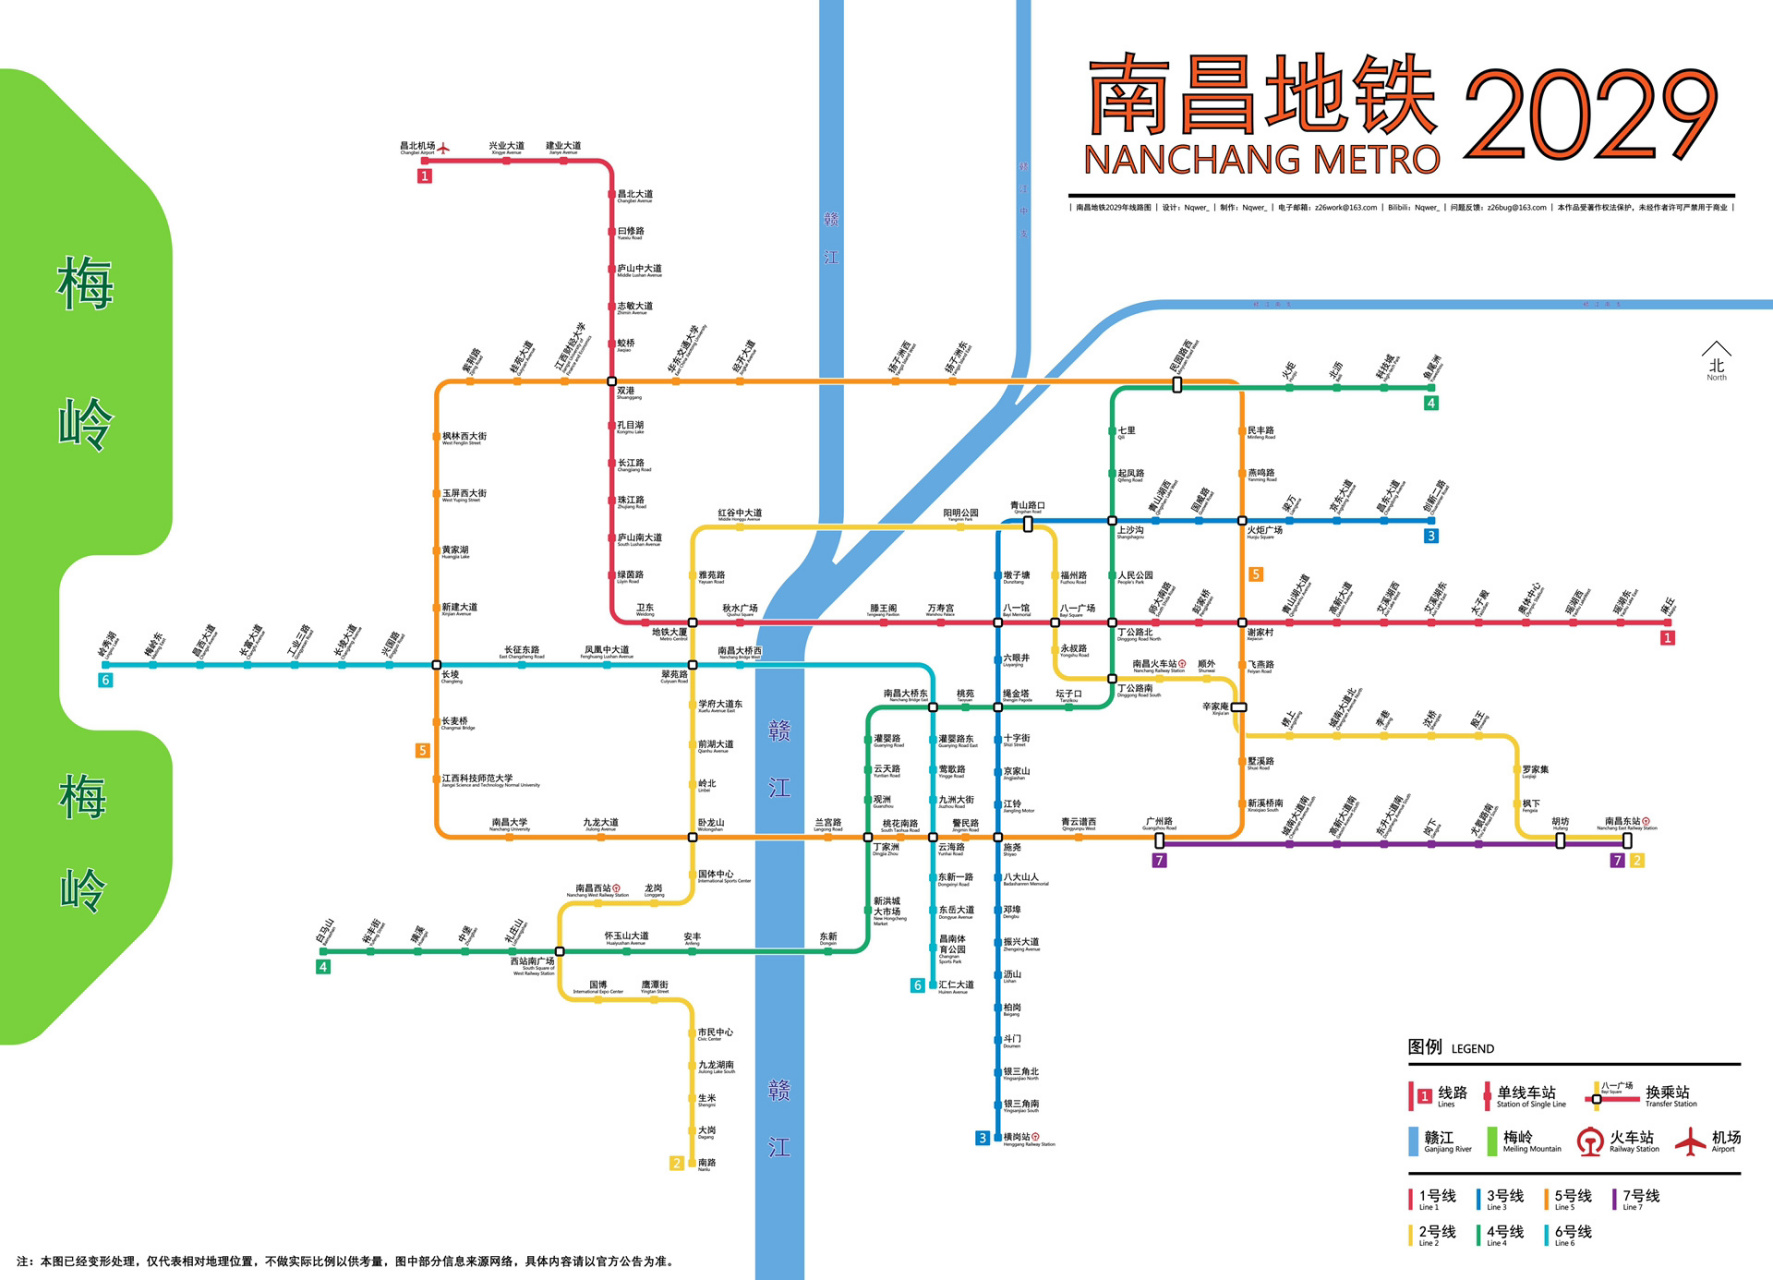 南昌地铁规划最新,南昌多条地铁线路规划 在南昌都市圈建设等新战略